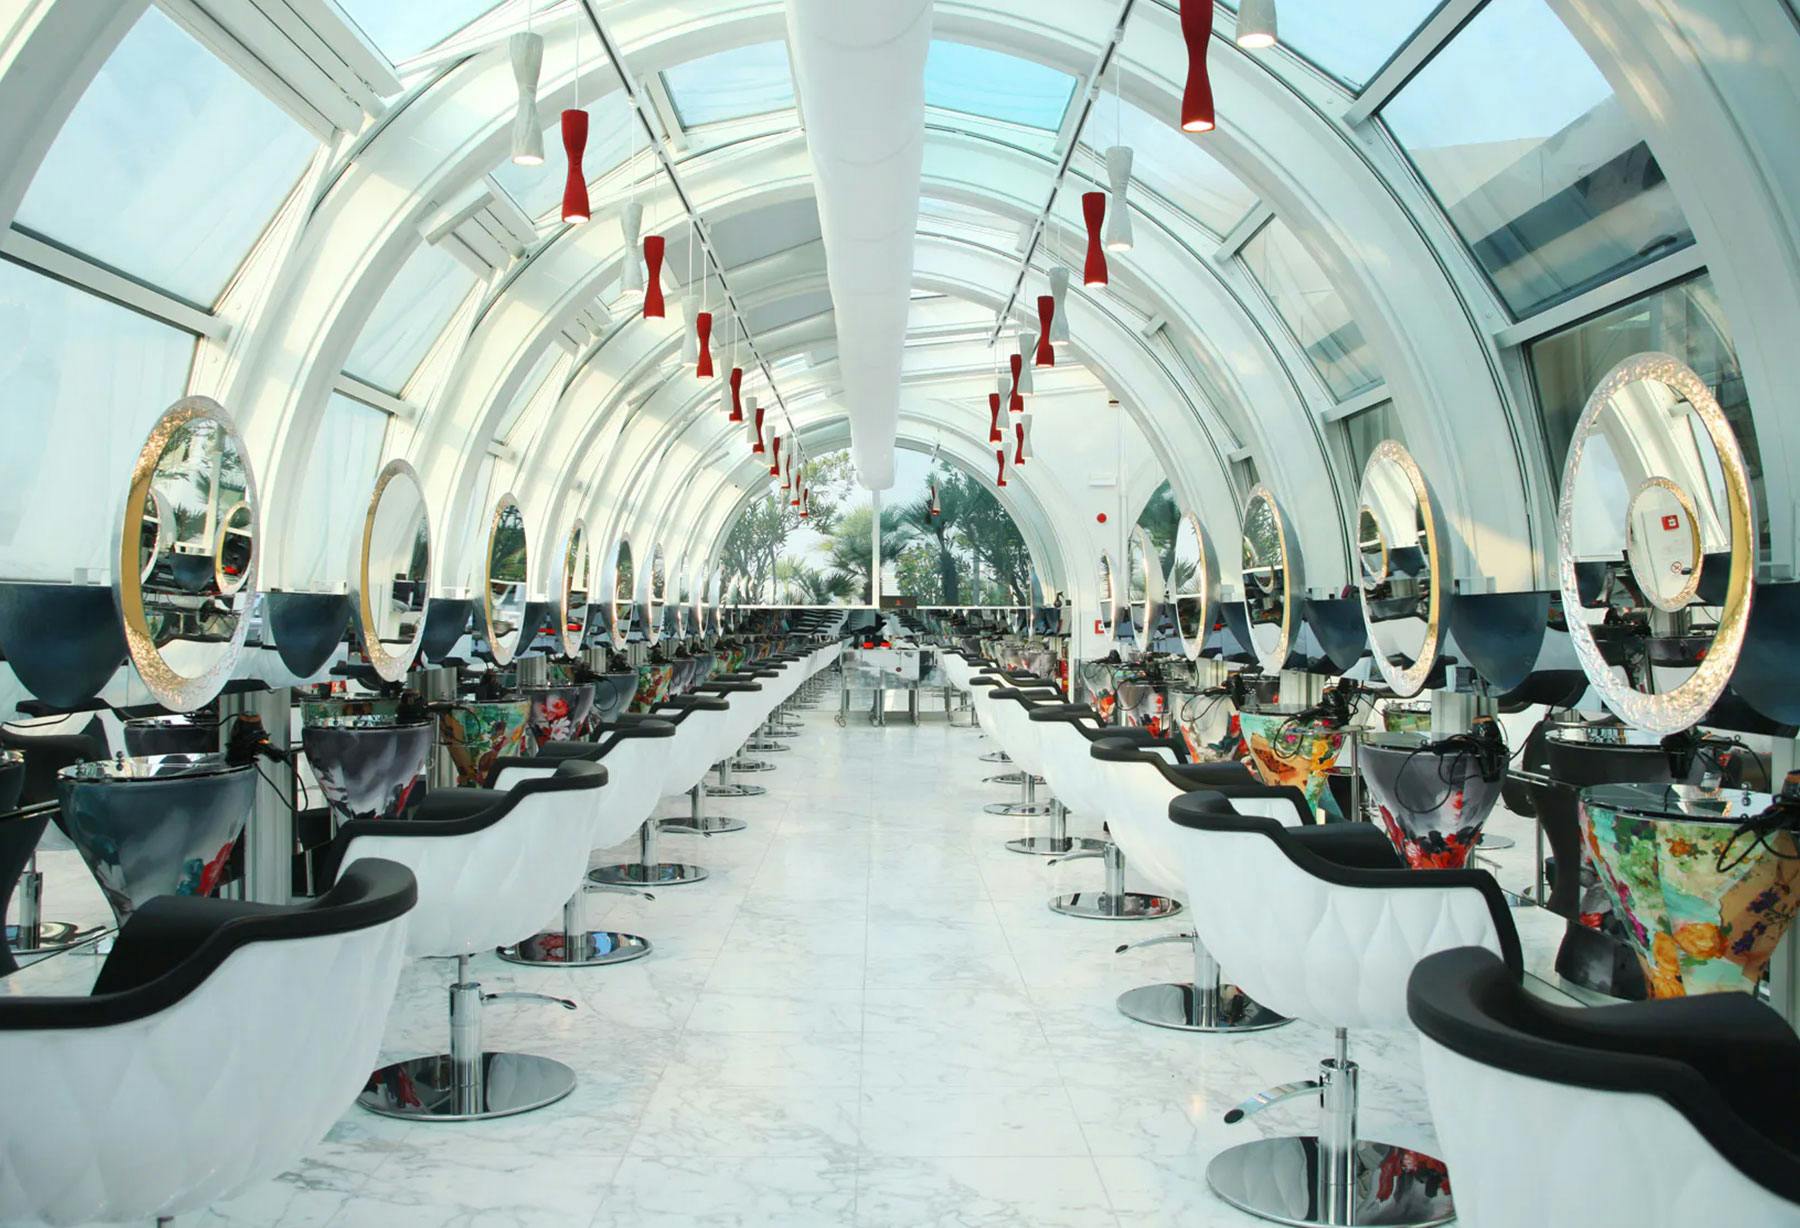 <p>La collaboration avec Atelier Aldo Coppola se poursuit une fois de plus à Milan dans le nouveau salon au sein de « La Rinascente », dans un lieu fascinant. Pour l’occasion, en plus de certains modèles présents à Lugano, la suspension « Dress My Beauty », conçue en collaboration avec l’architecte Anton Kobrinetz, fait son apparition.</p>
